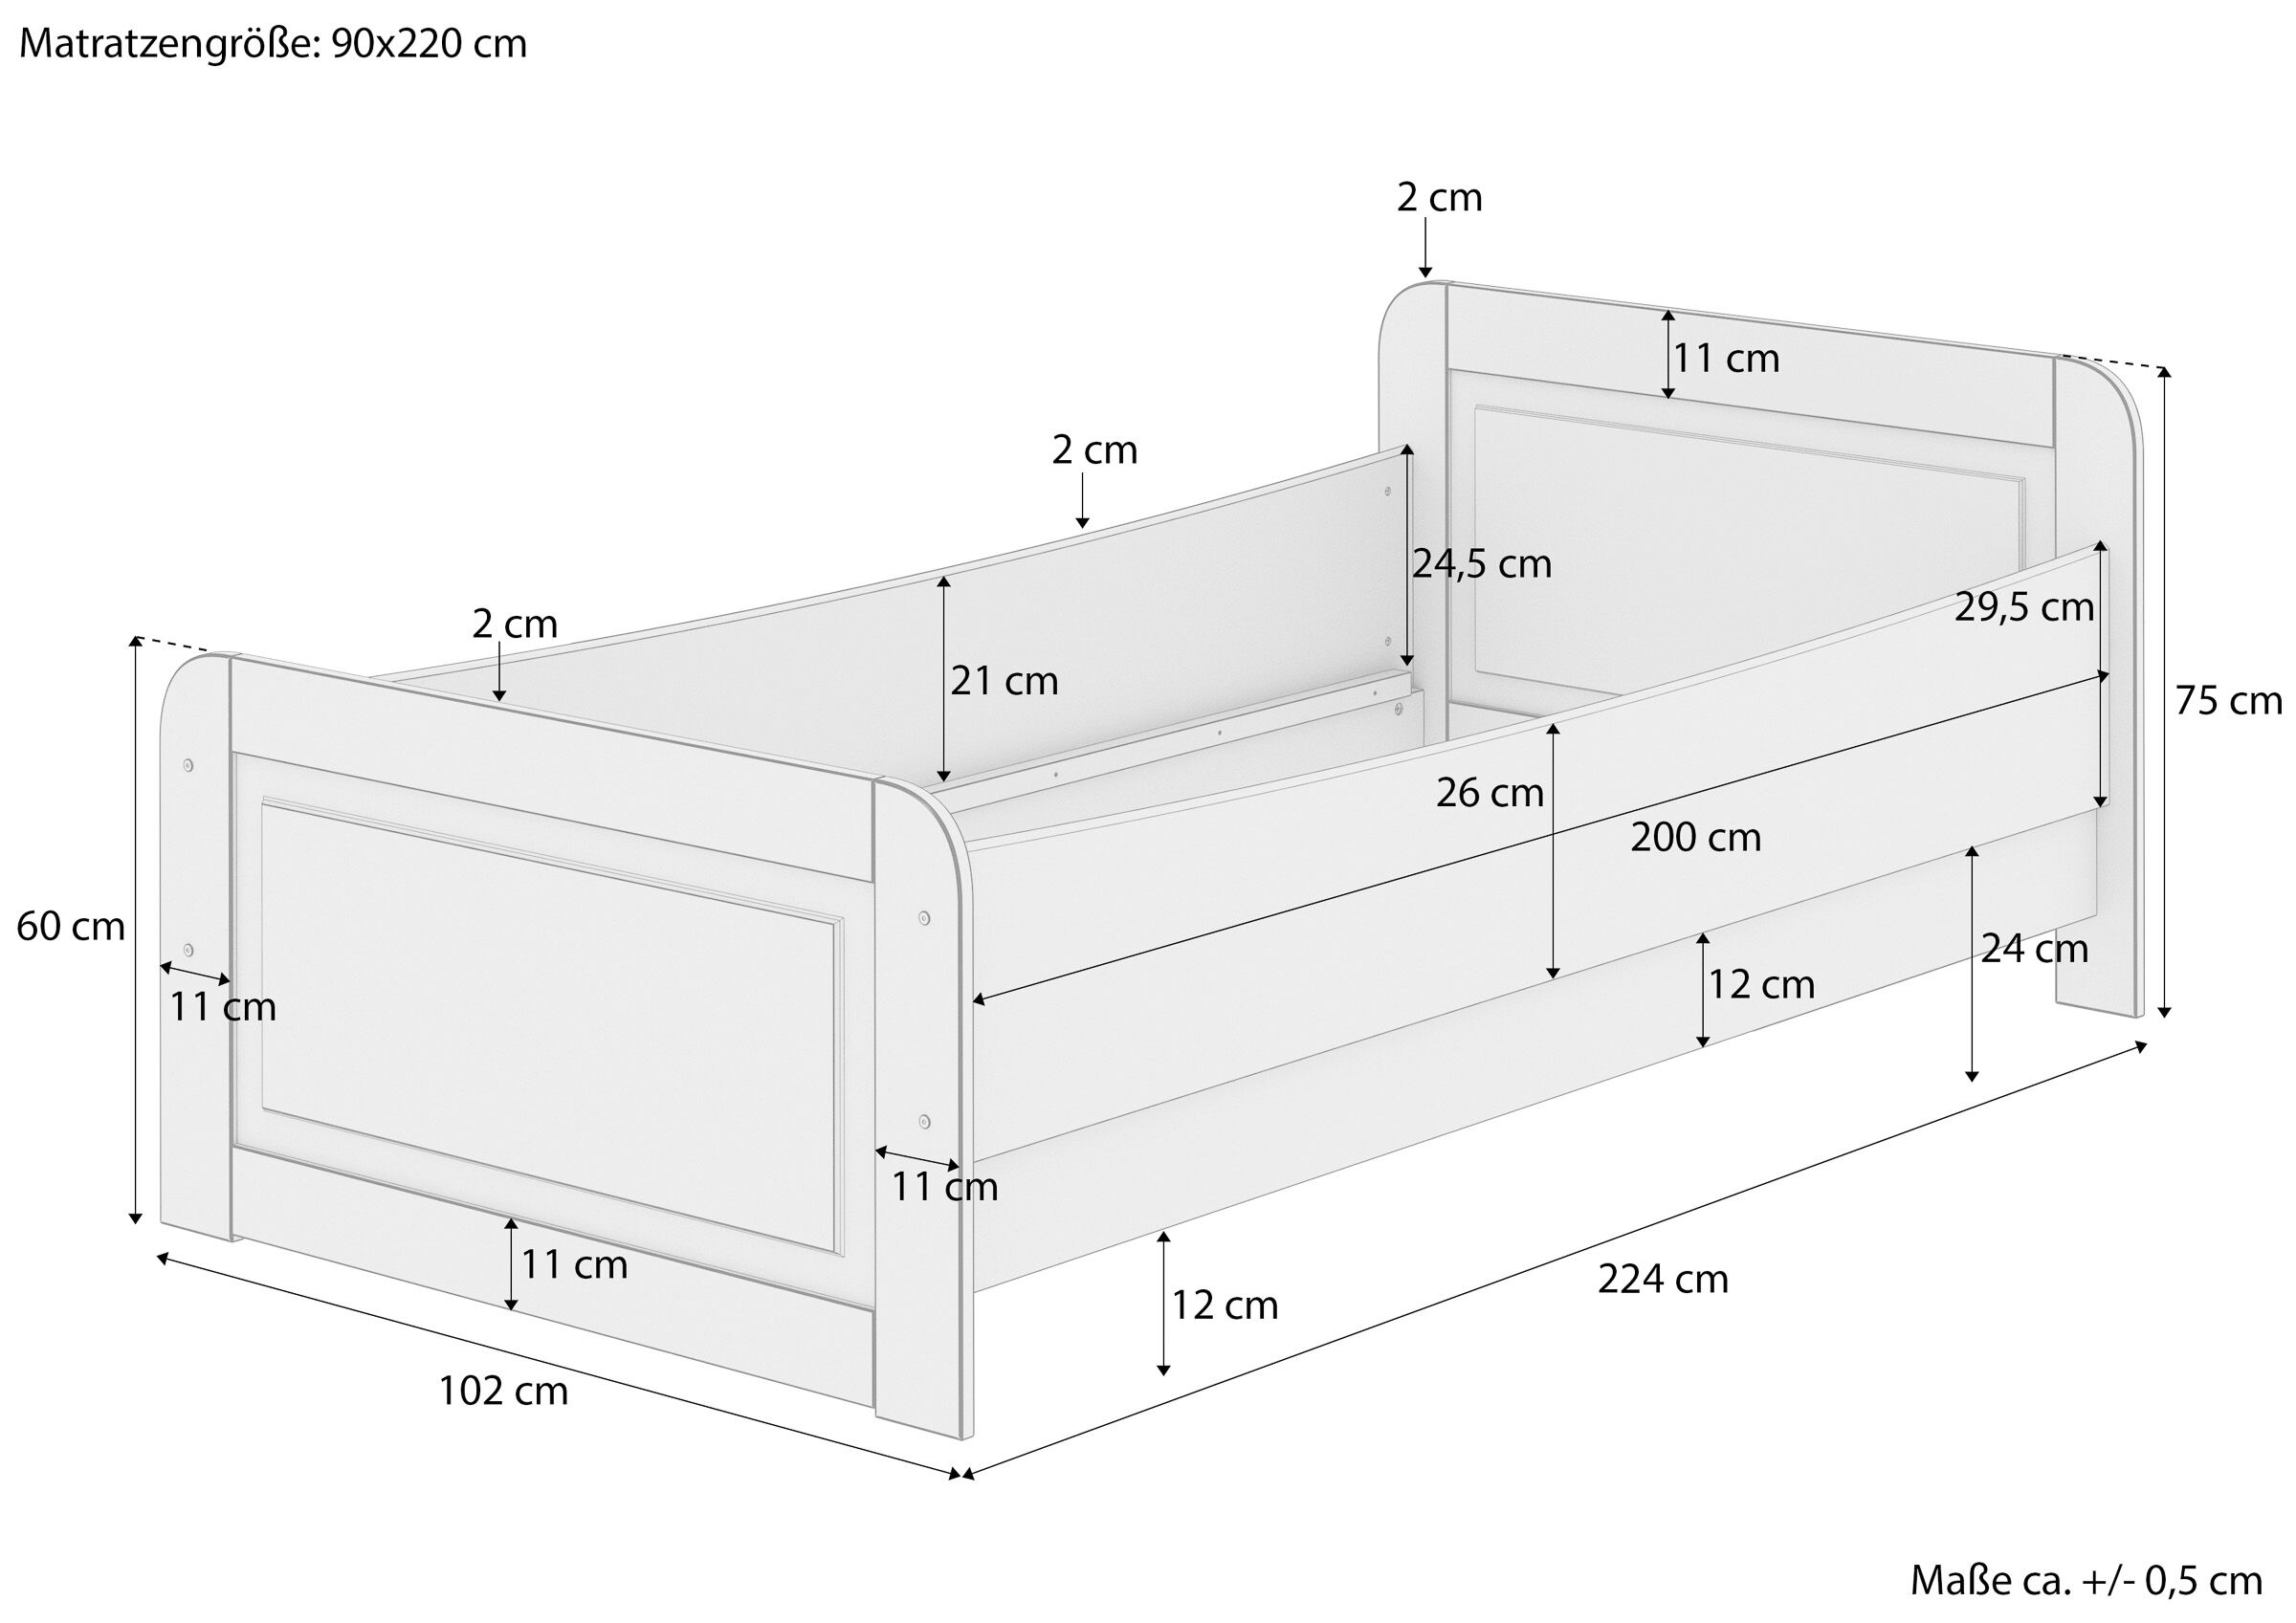 Quattro varianti di robusto letto ideale anche PER ANZIANI 90x220 Pino massello V-60.42-09-220